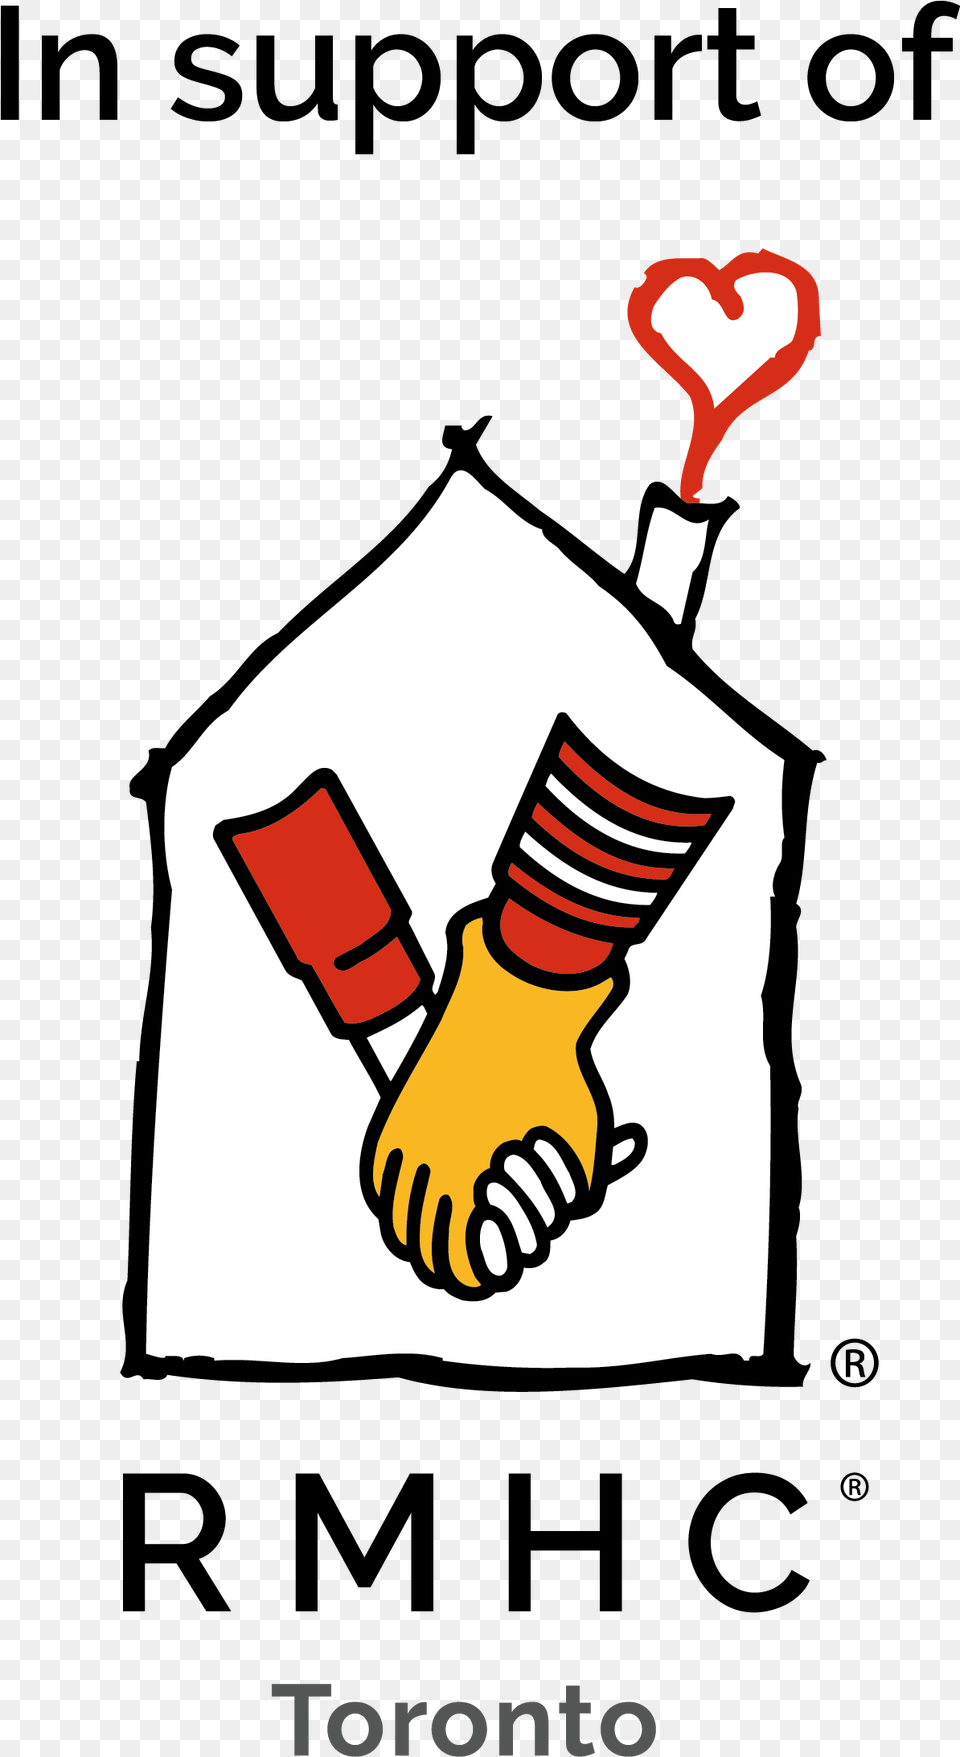 Ronald Mcdonald House Ronald Mcdonald House Charity Logo, Smoke Pipe, Clothing, Glove Free Png